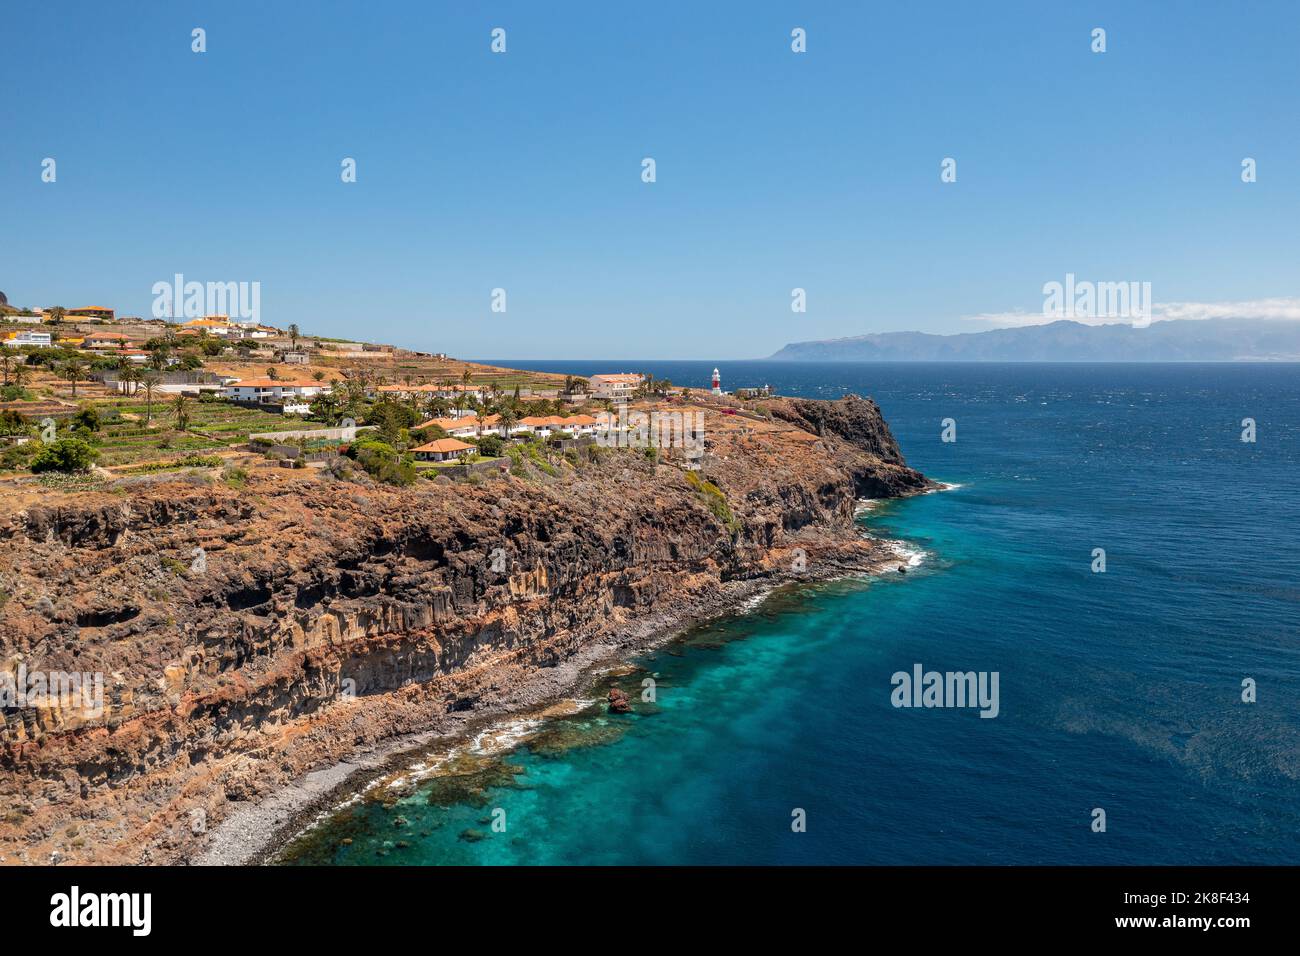 La Gomera. Aerial photo of the San Sebastian marina and town, La Gomera, Canary Islands. Stock Photo